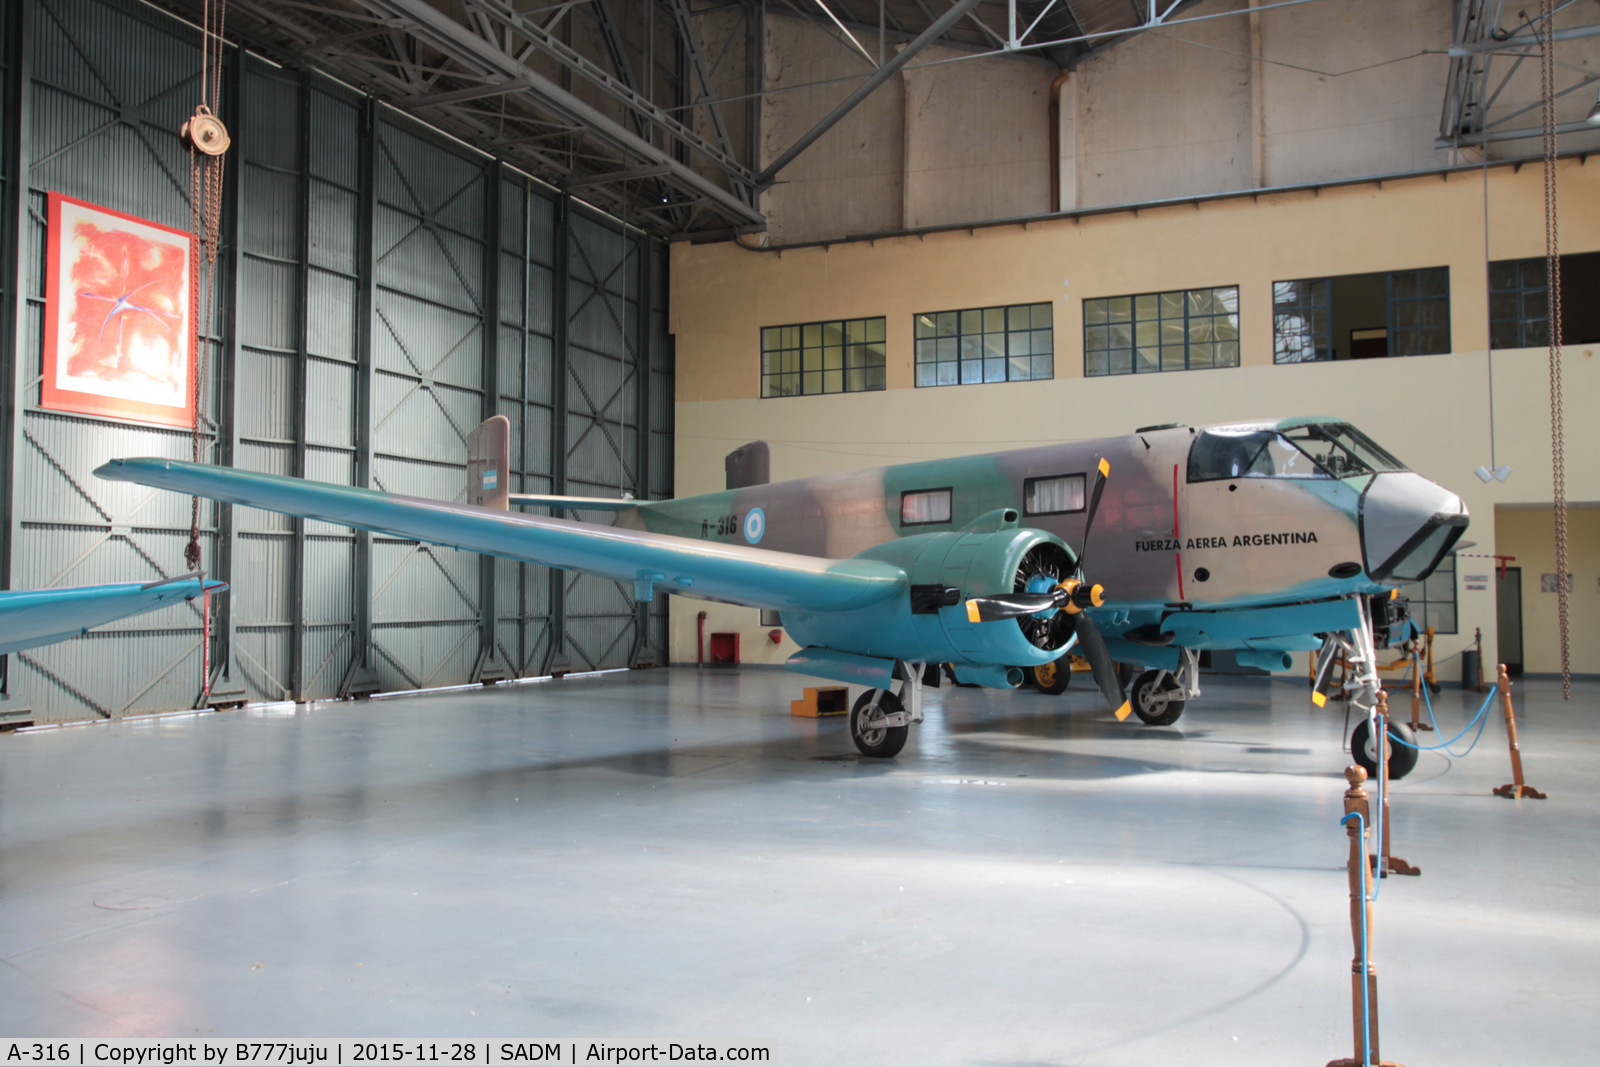 A-316, FMA IA-35-1b Huanquerro C/N 21, at Museo Nacional de Aeronautica